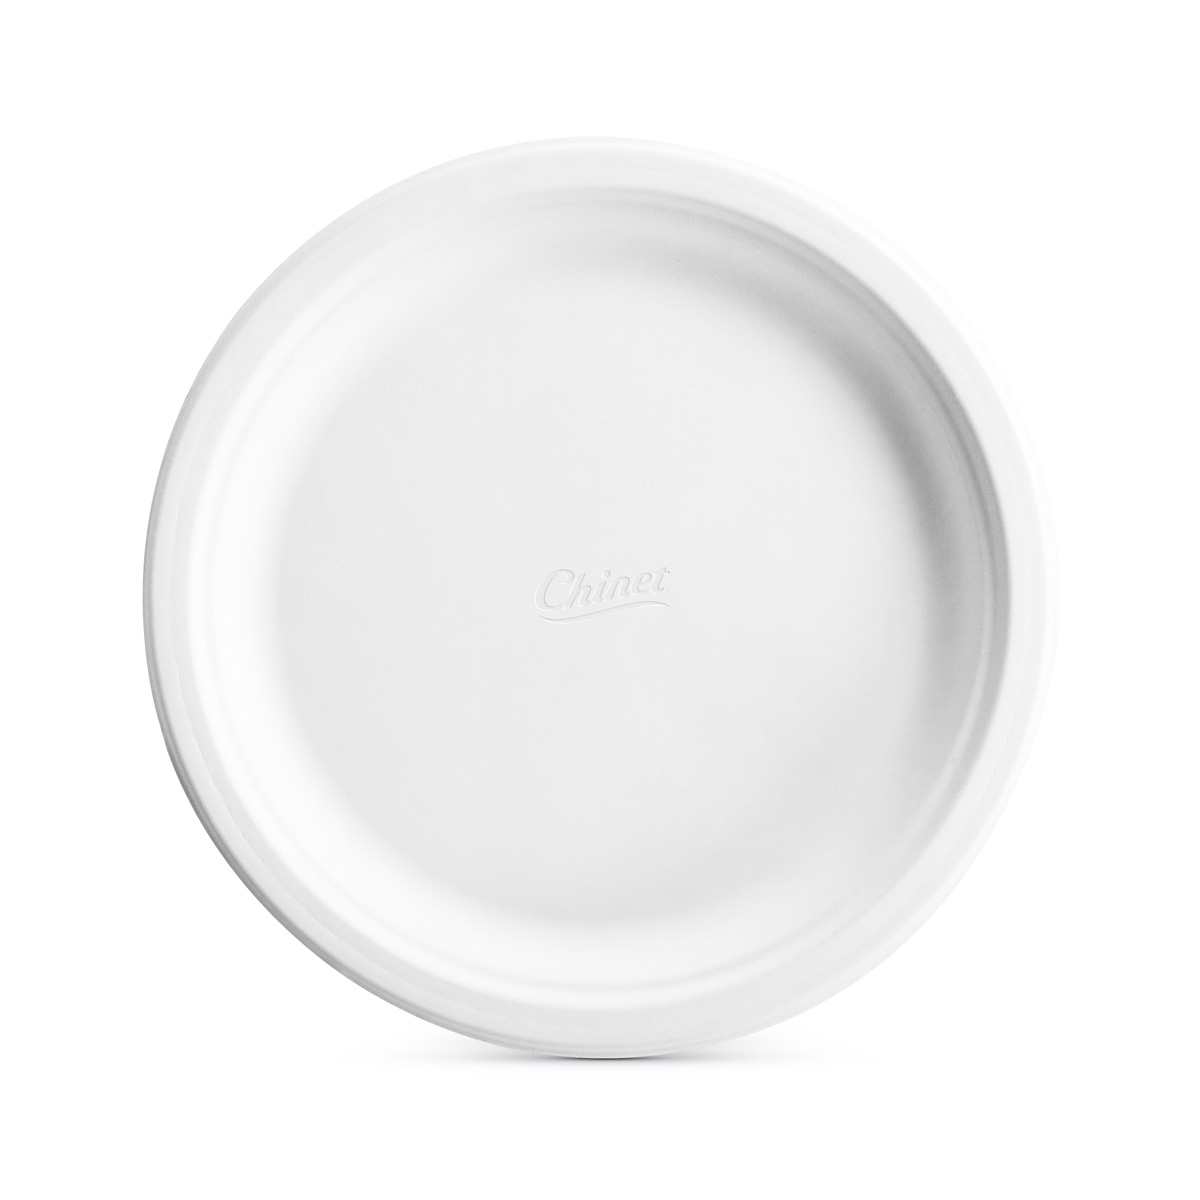 21217 10.5&quot;CHINET PLATE 500/cs 
ROUND WHITE MOLDED FIBER 
VENTURE DINNERWARE